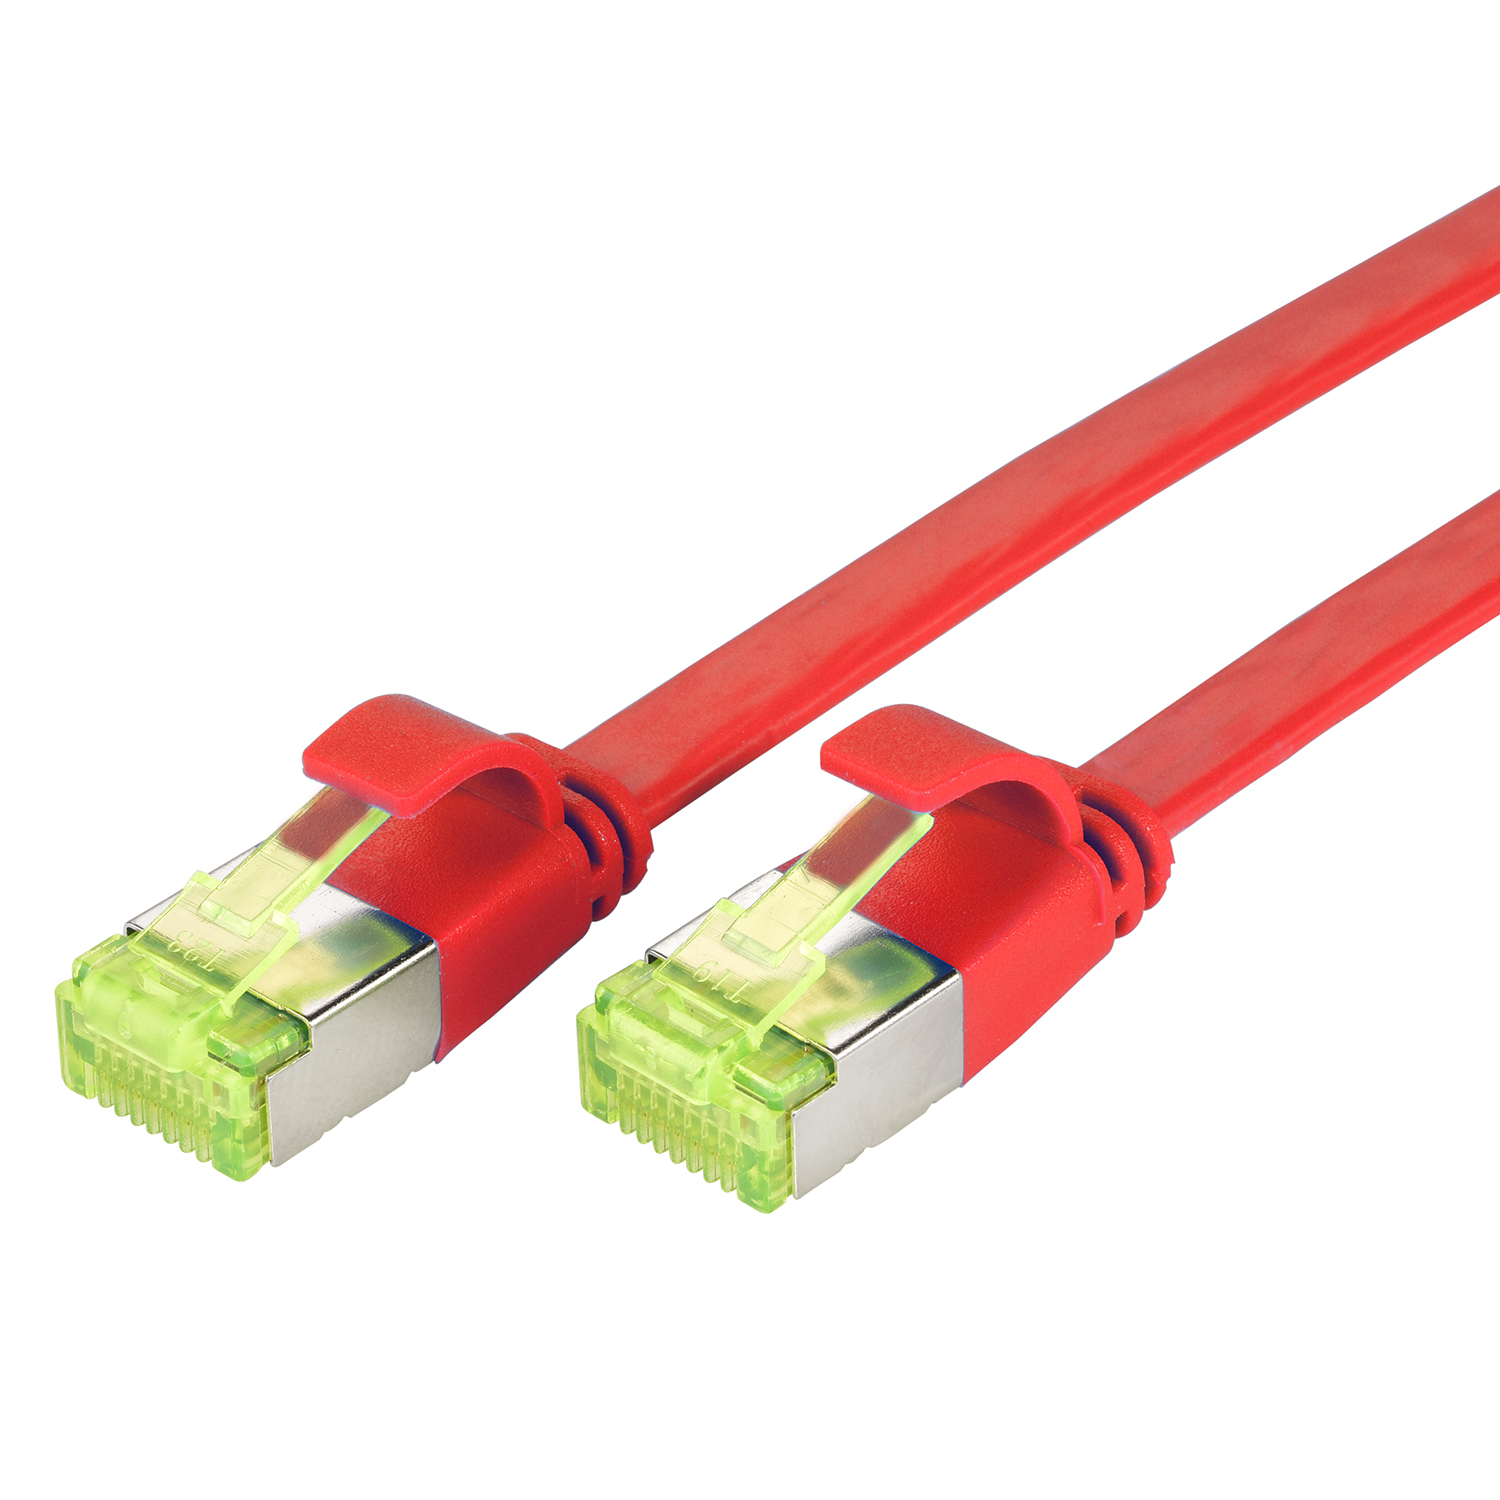 TPFNET 7,5m Patchkabel GBit, 10 Netzwerkkabel, Flachkabel 7,5 m / rot, U/FTP